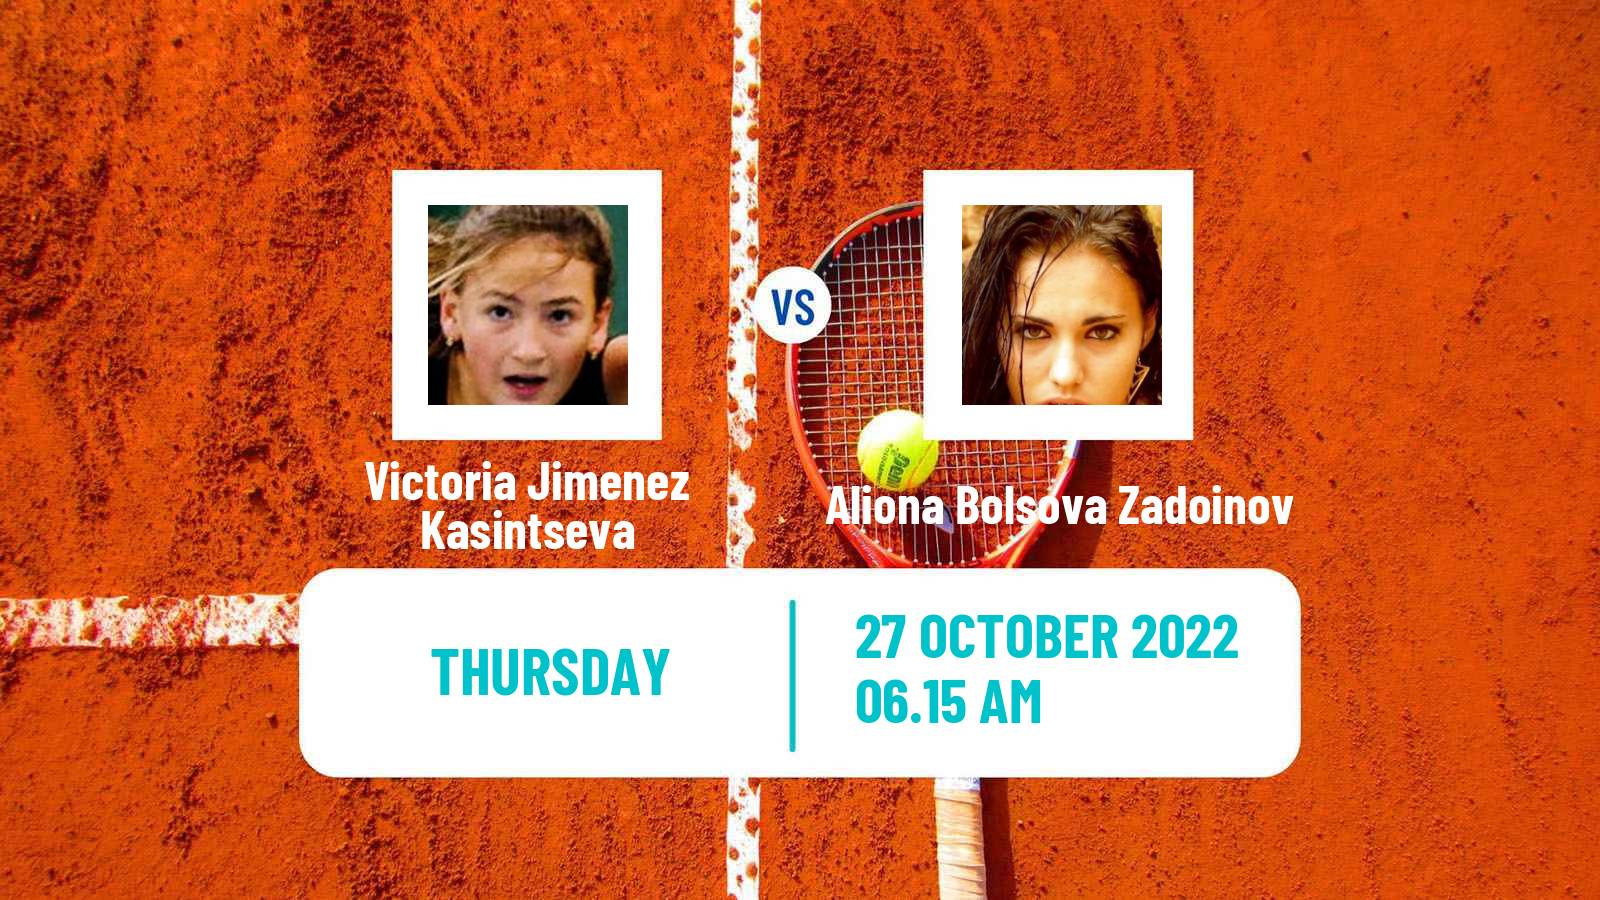 Tennis ITF Tournaments Victoria Jimenez Kasintseva - Aliona Bolsova Zadoinov